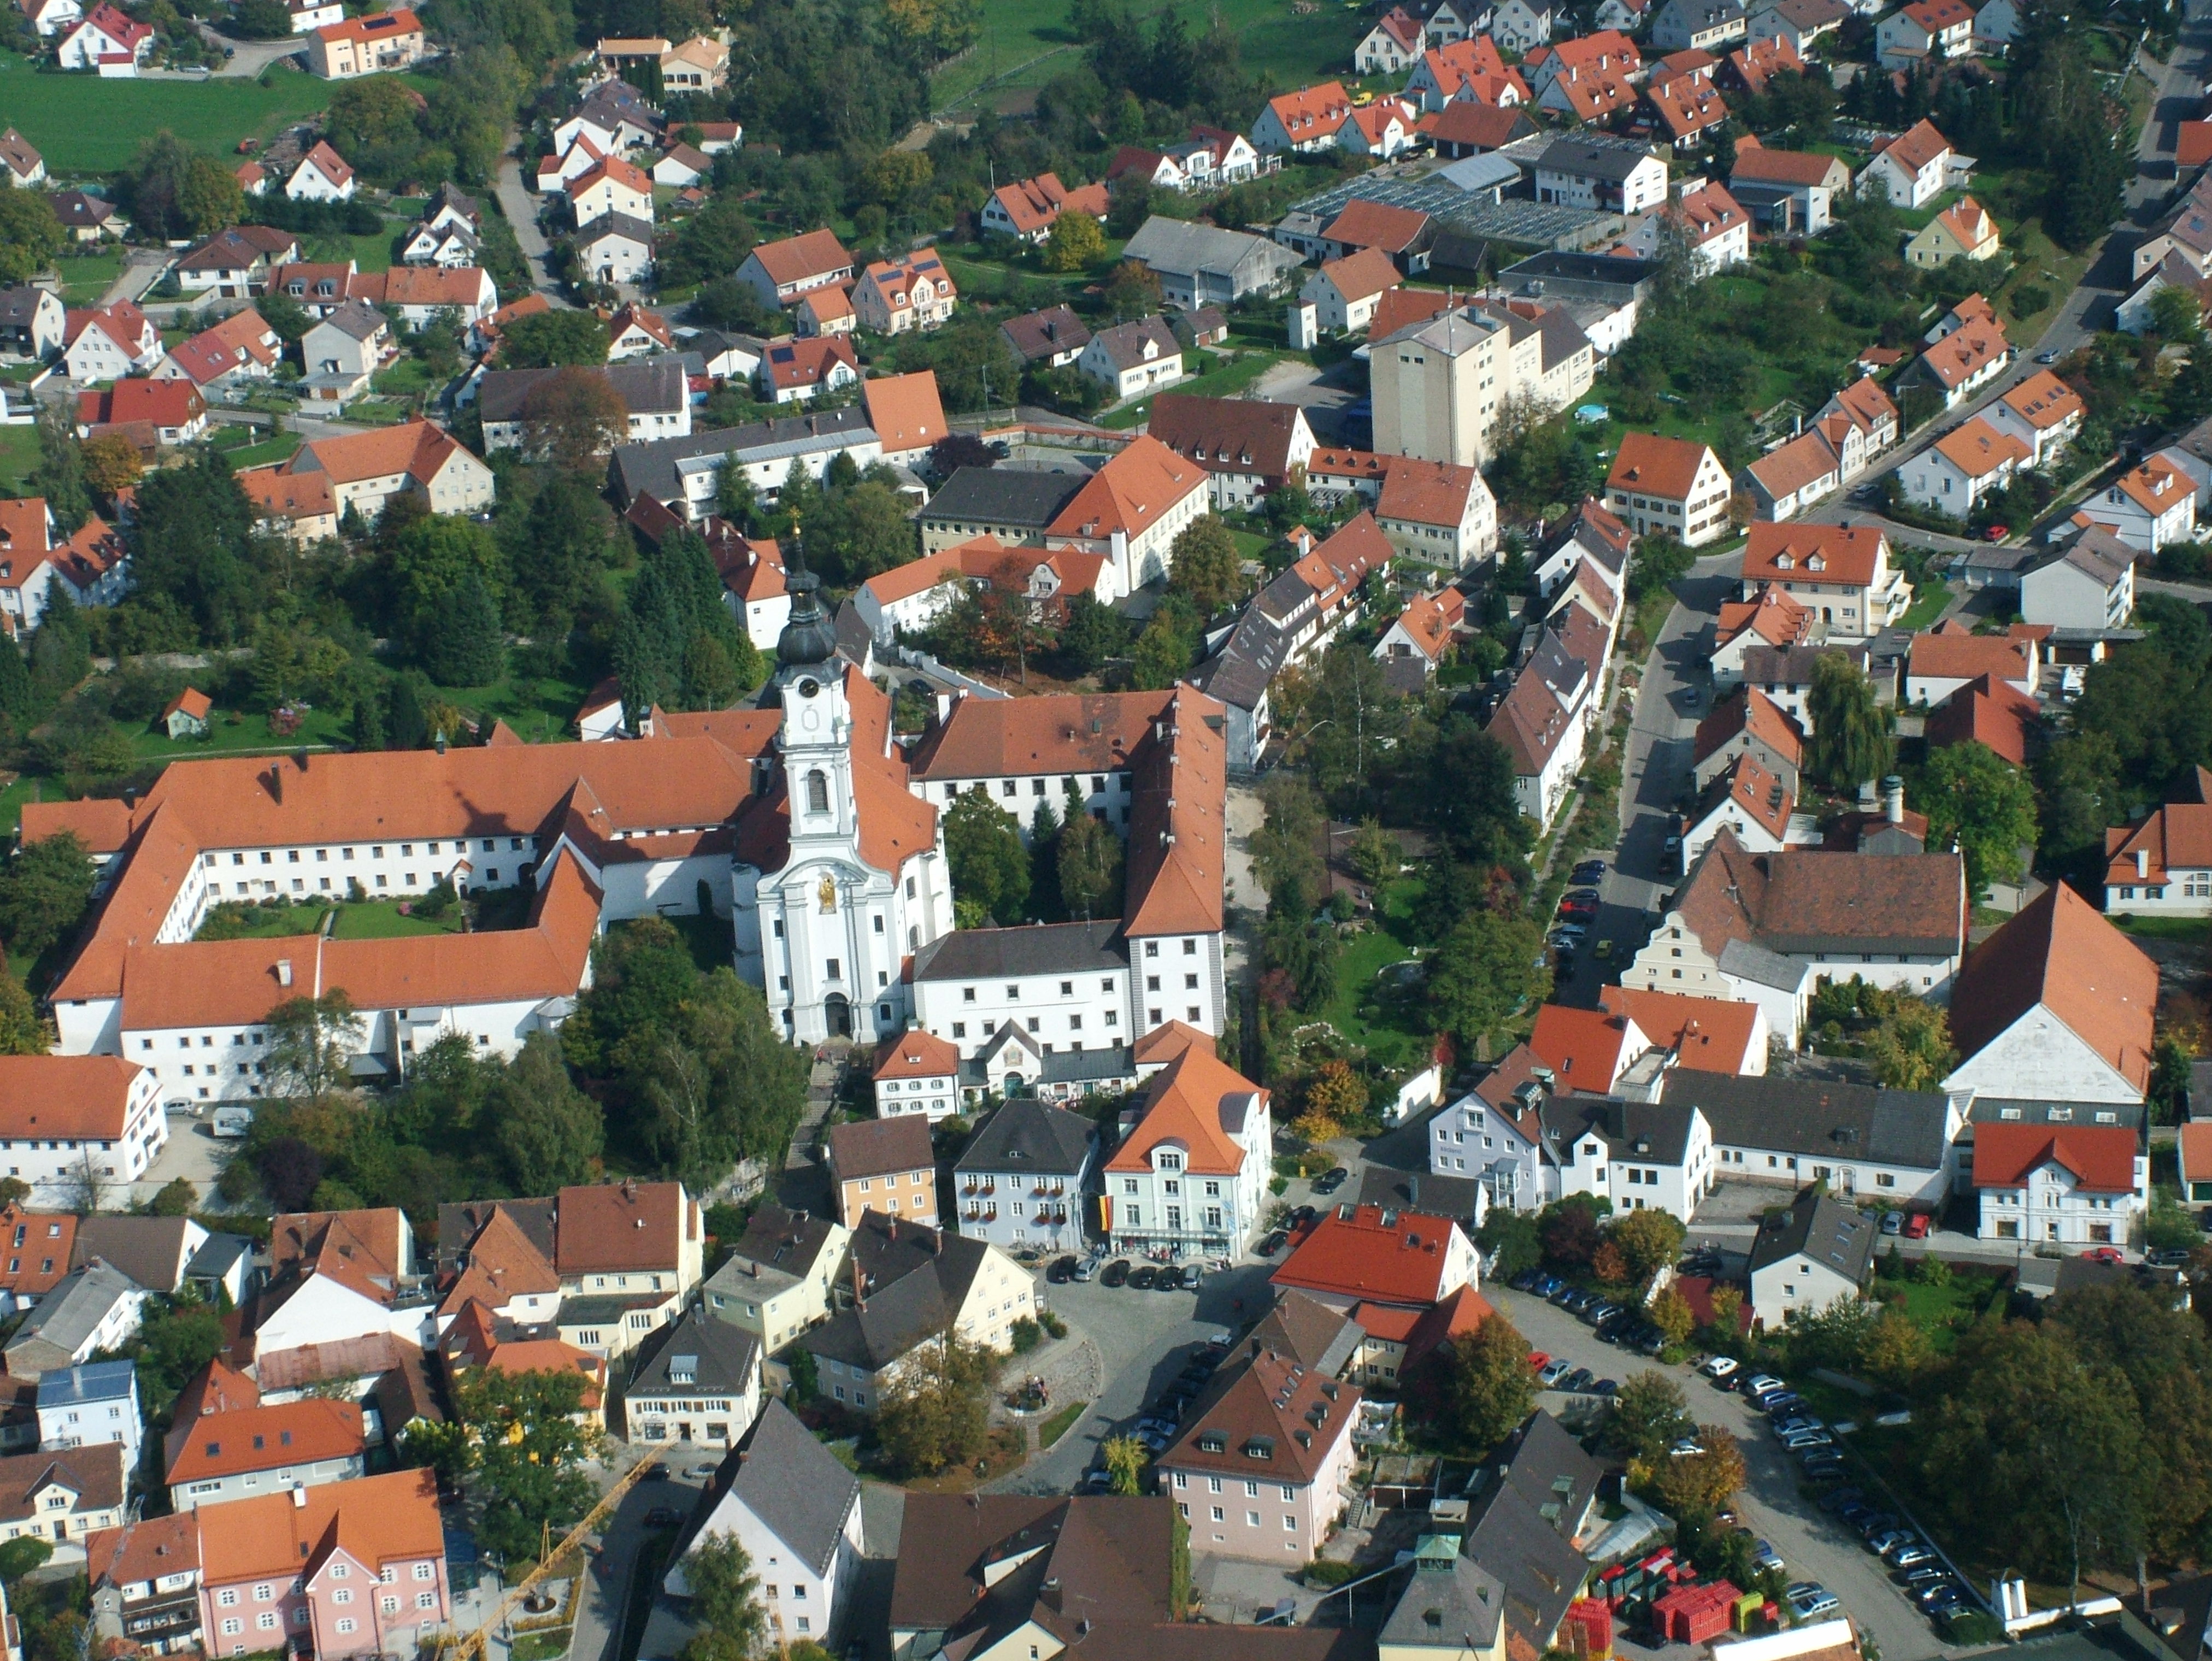 Luftbild von Altomünster mit der Klosteranlage